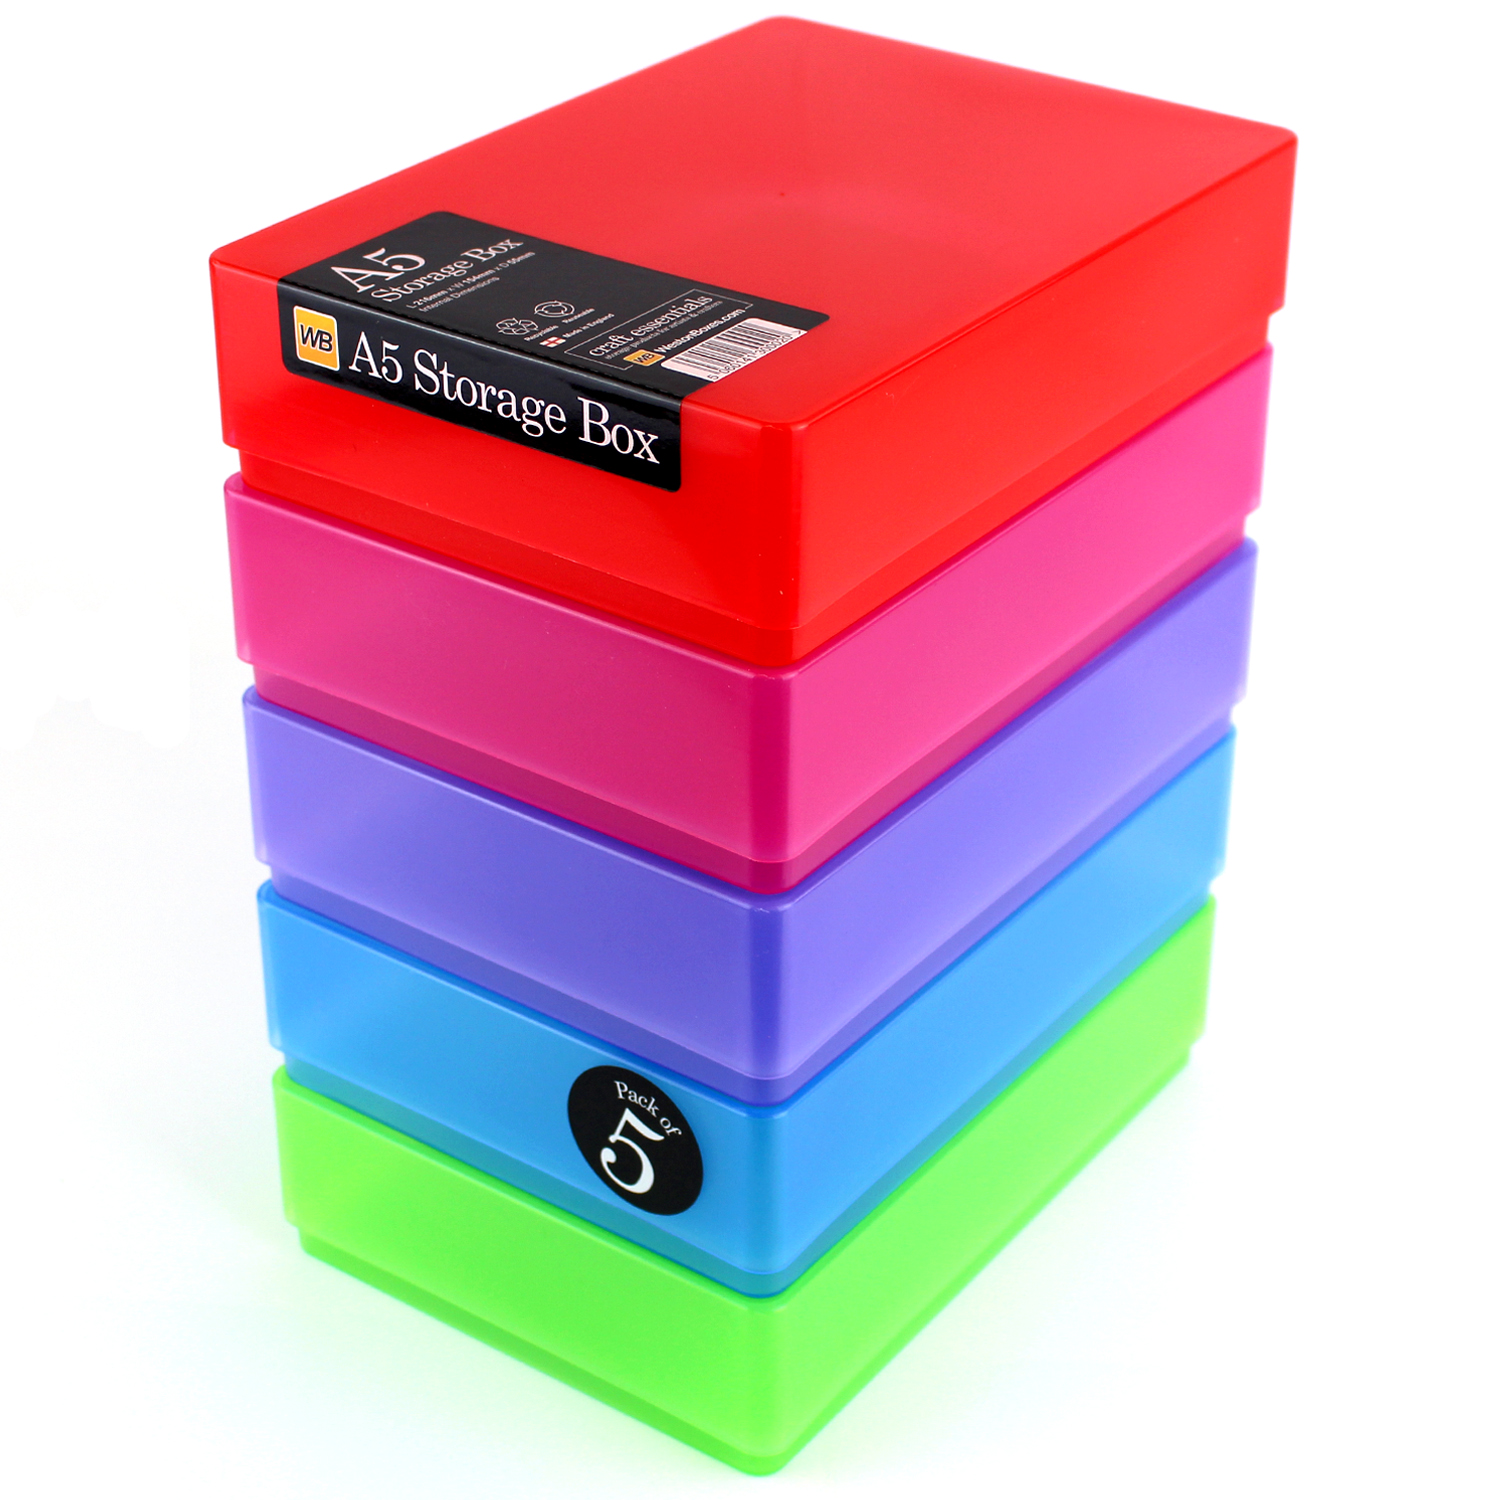 A5 Plastic Storage Box, Colour, Transparent - Trade